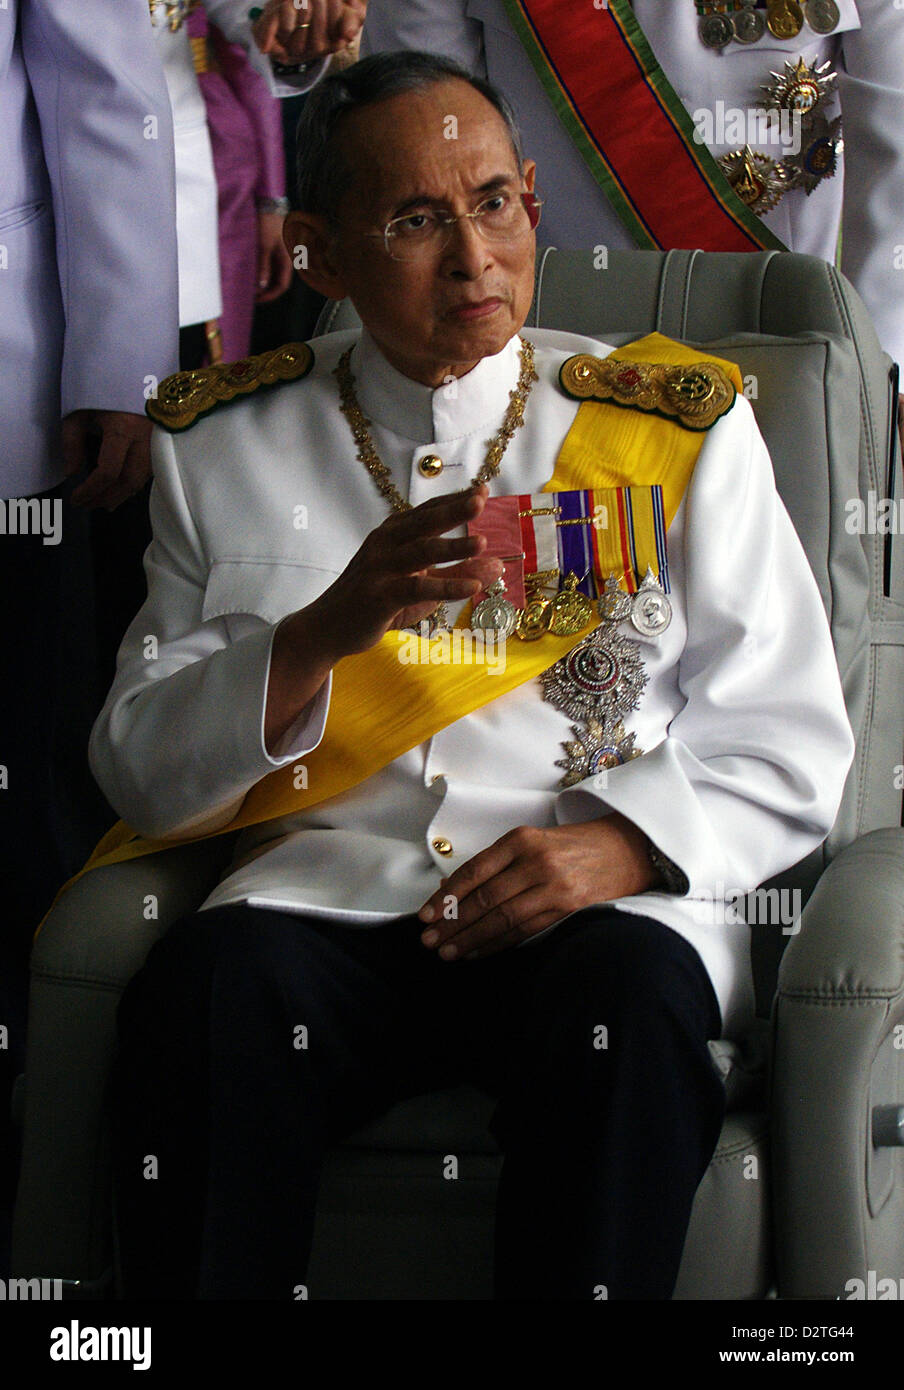 Le roi de Thaïlande Bhumibol Adulyadej hôpital Siriraj quitte le 5 décembre 2009, avant d'aller au Palais Royal où il accorde une audience à ses sympathisants à l'occasion de son anniversaire. La Thaïlande est bien-aimé genre a eu 82 ans le 5 décembre 2009. Banque D'Images